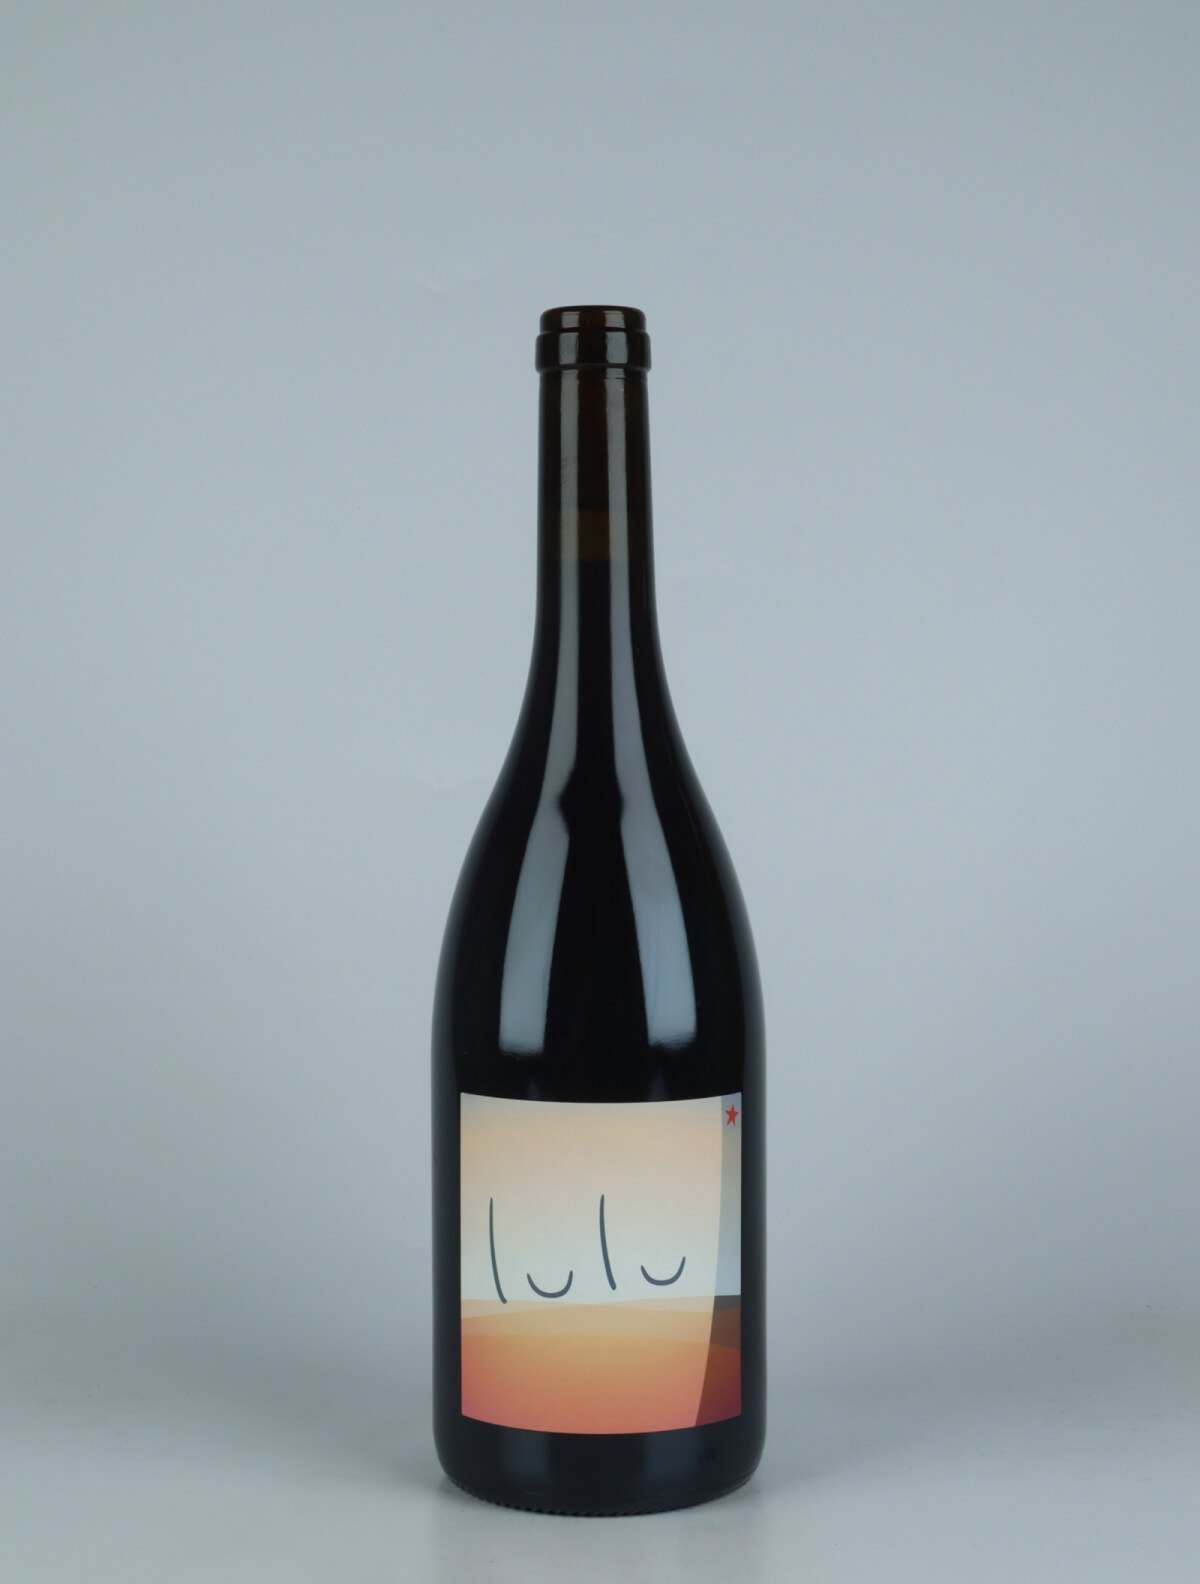 En flaske 2022 Lulu Rødvin fra Patrick Bouju, Auvergne i Frankrig